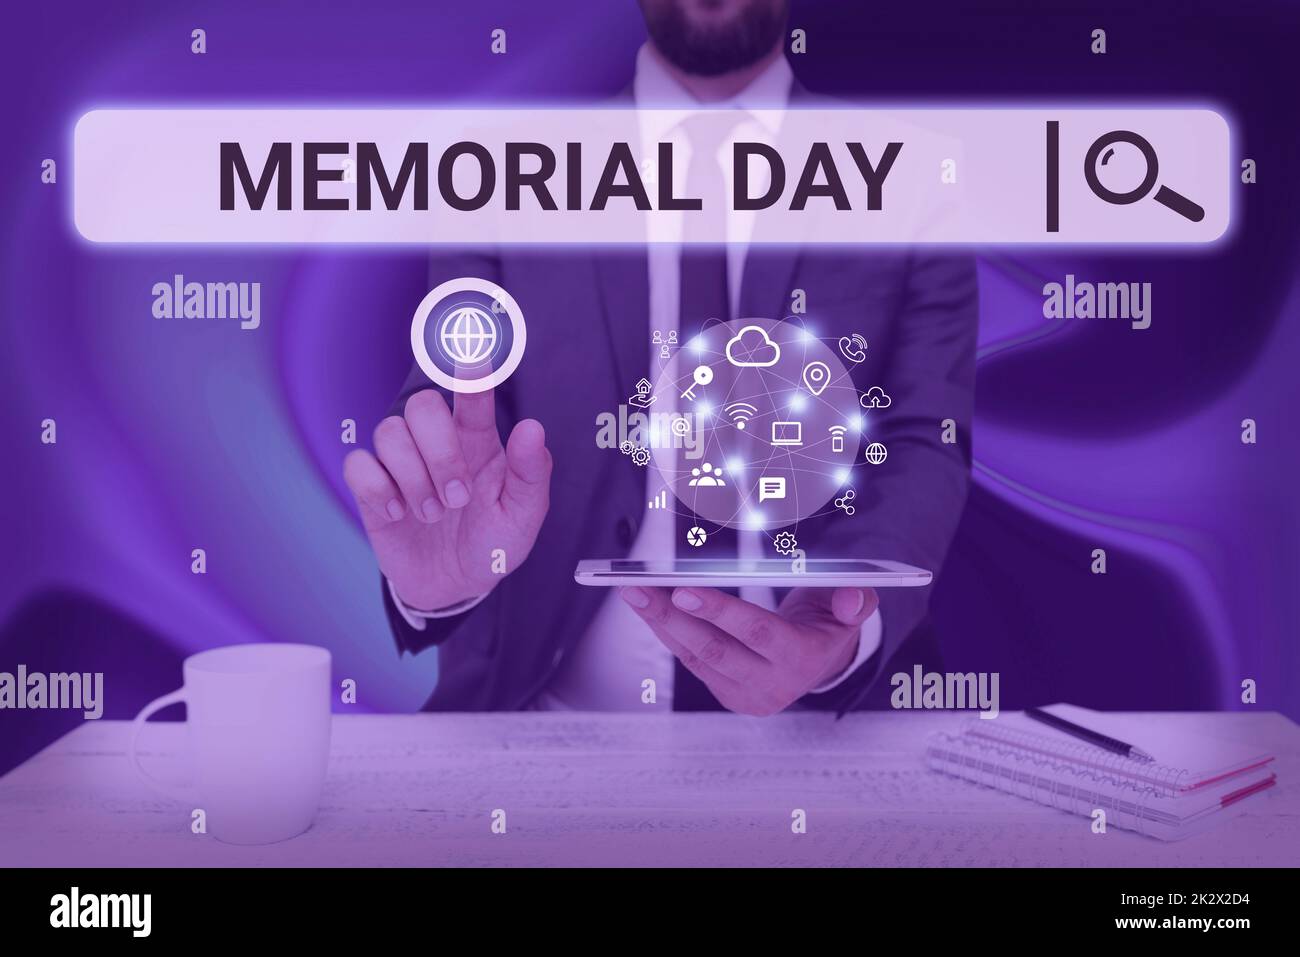 Hinweisschild für Memorial Day. Ein Wort, das geschrieben wurde, um diejenigen zu ehren und zu erinnern, die im Militärdienst starben, Mann, der den Bildschirm des Mobiltelefons hält, der die futuristische Technologie zeigt. Stockfoto